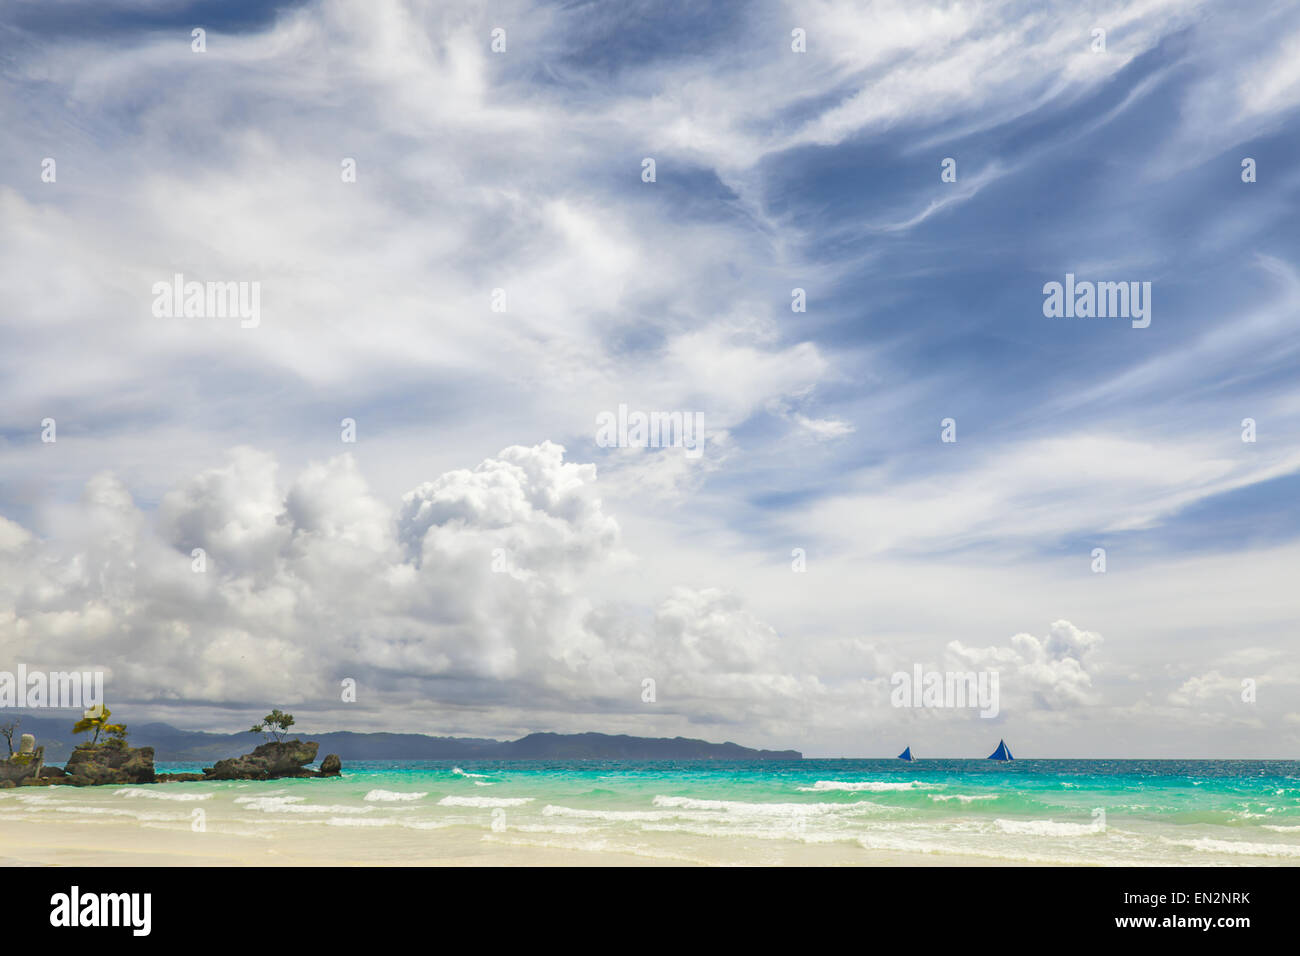 Blaue Segelschiff am Horizont der heißen tropischen Meer große weiße Wolken am blauen Himmel, gelben Sandstrand Philippinen Boracay island Stockfoto